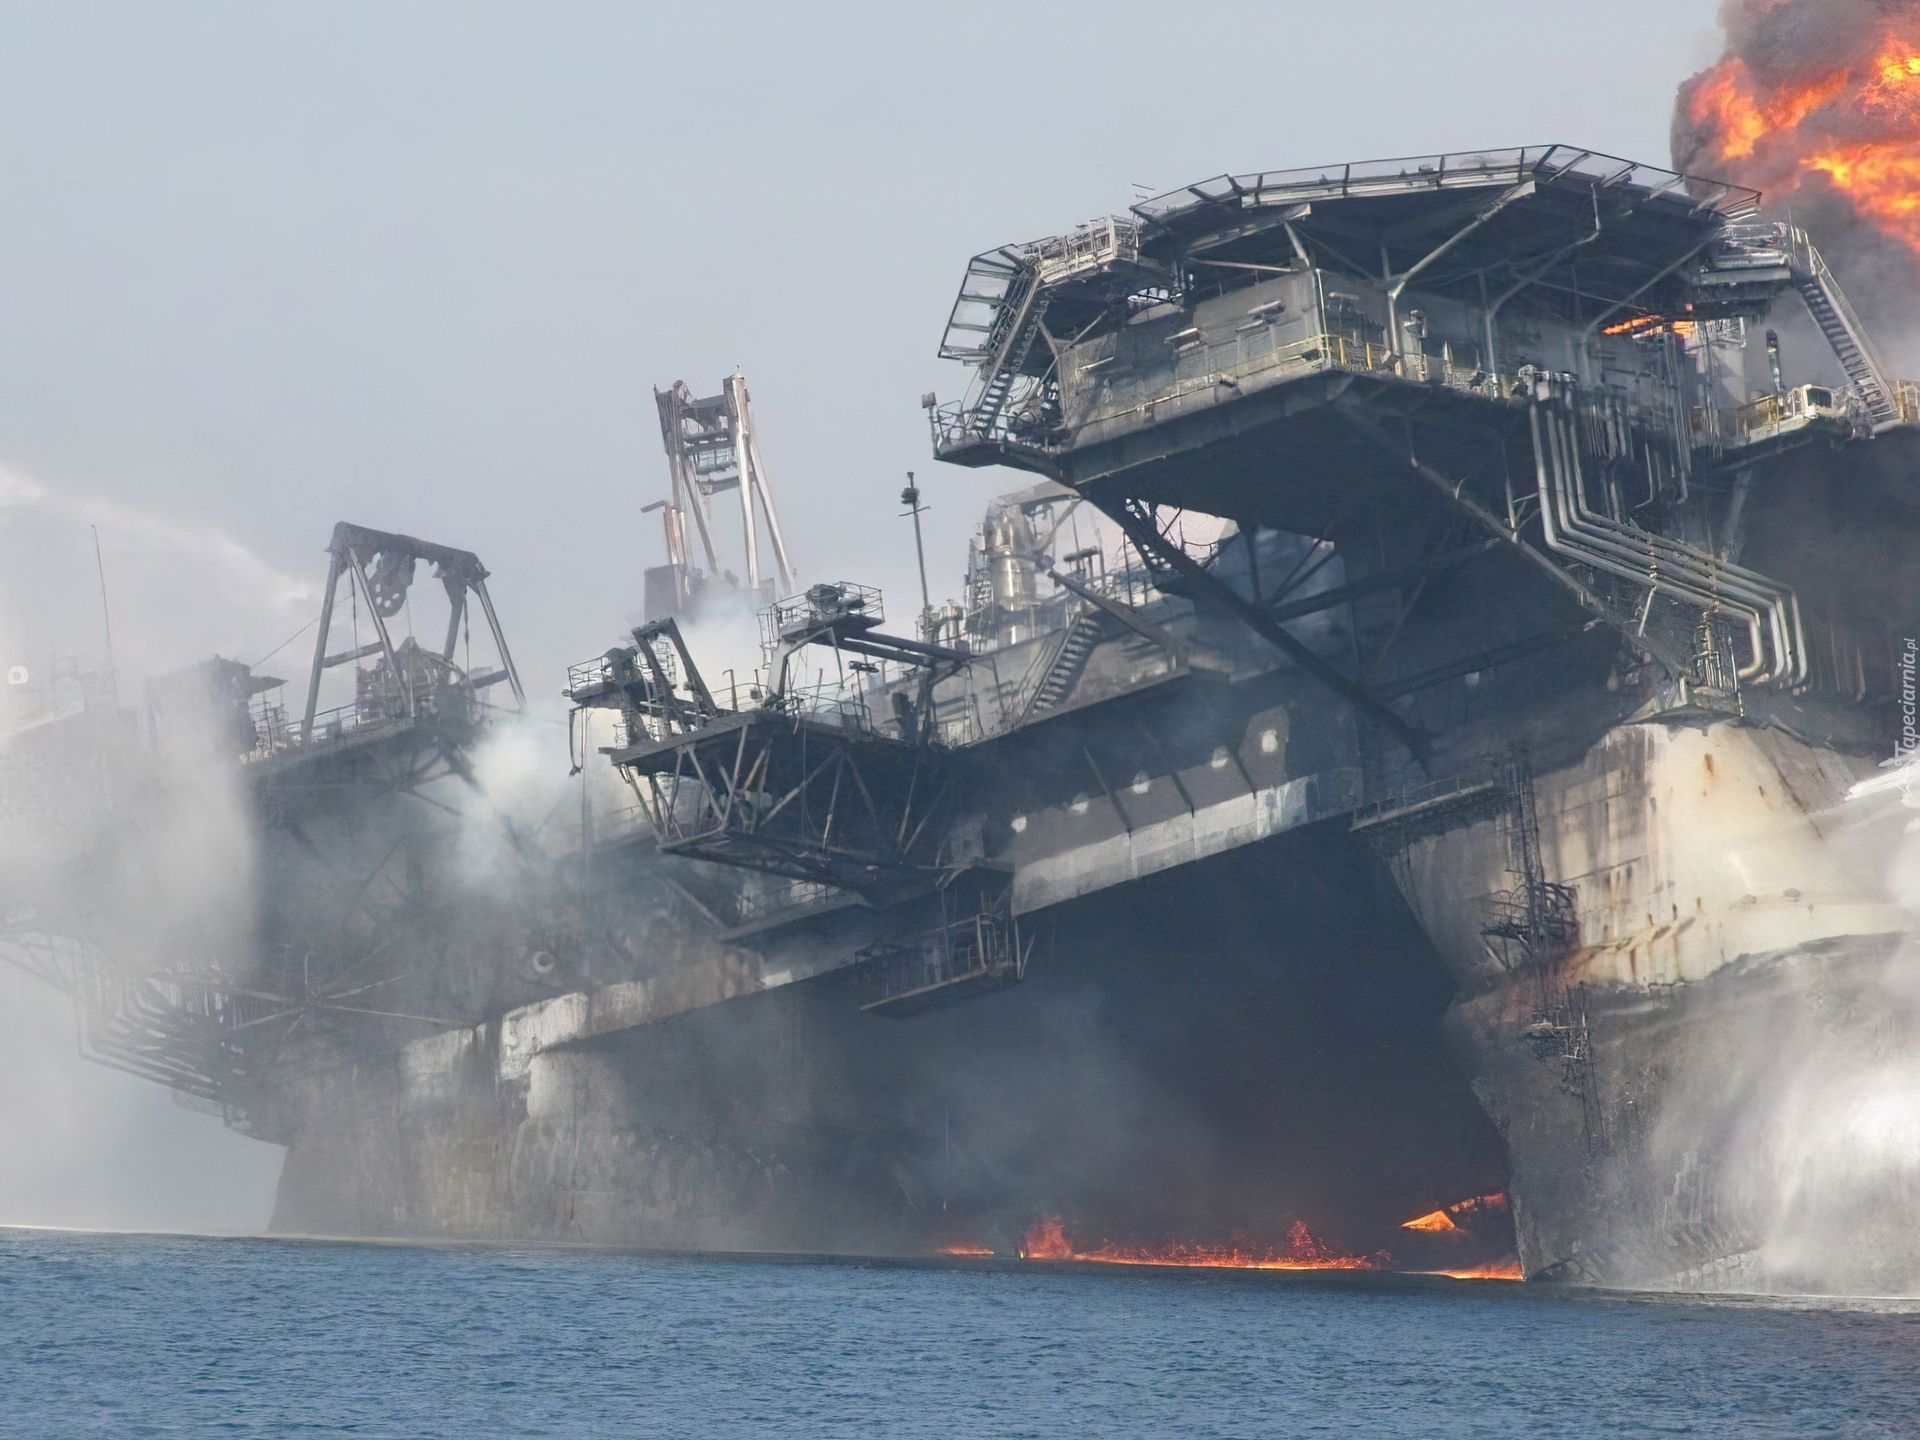 Аварии на буровой. Взрыв нефтяной платформы Deepwater Horizon 2010. Авария на нефтяной платформе в мексиканском заливе 2010. Глубоководный Горизонт катастрофа 2010. Авария на нефтяной платформе Deepwater Horizon.